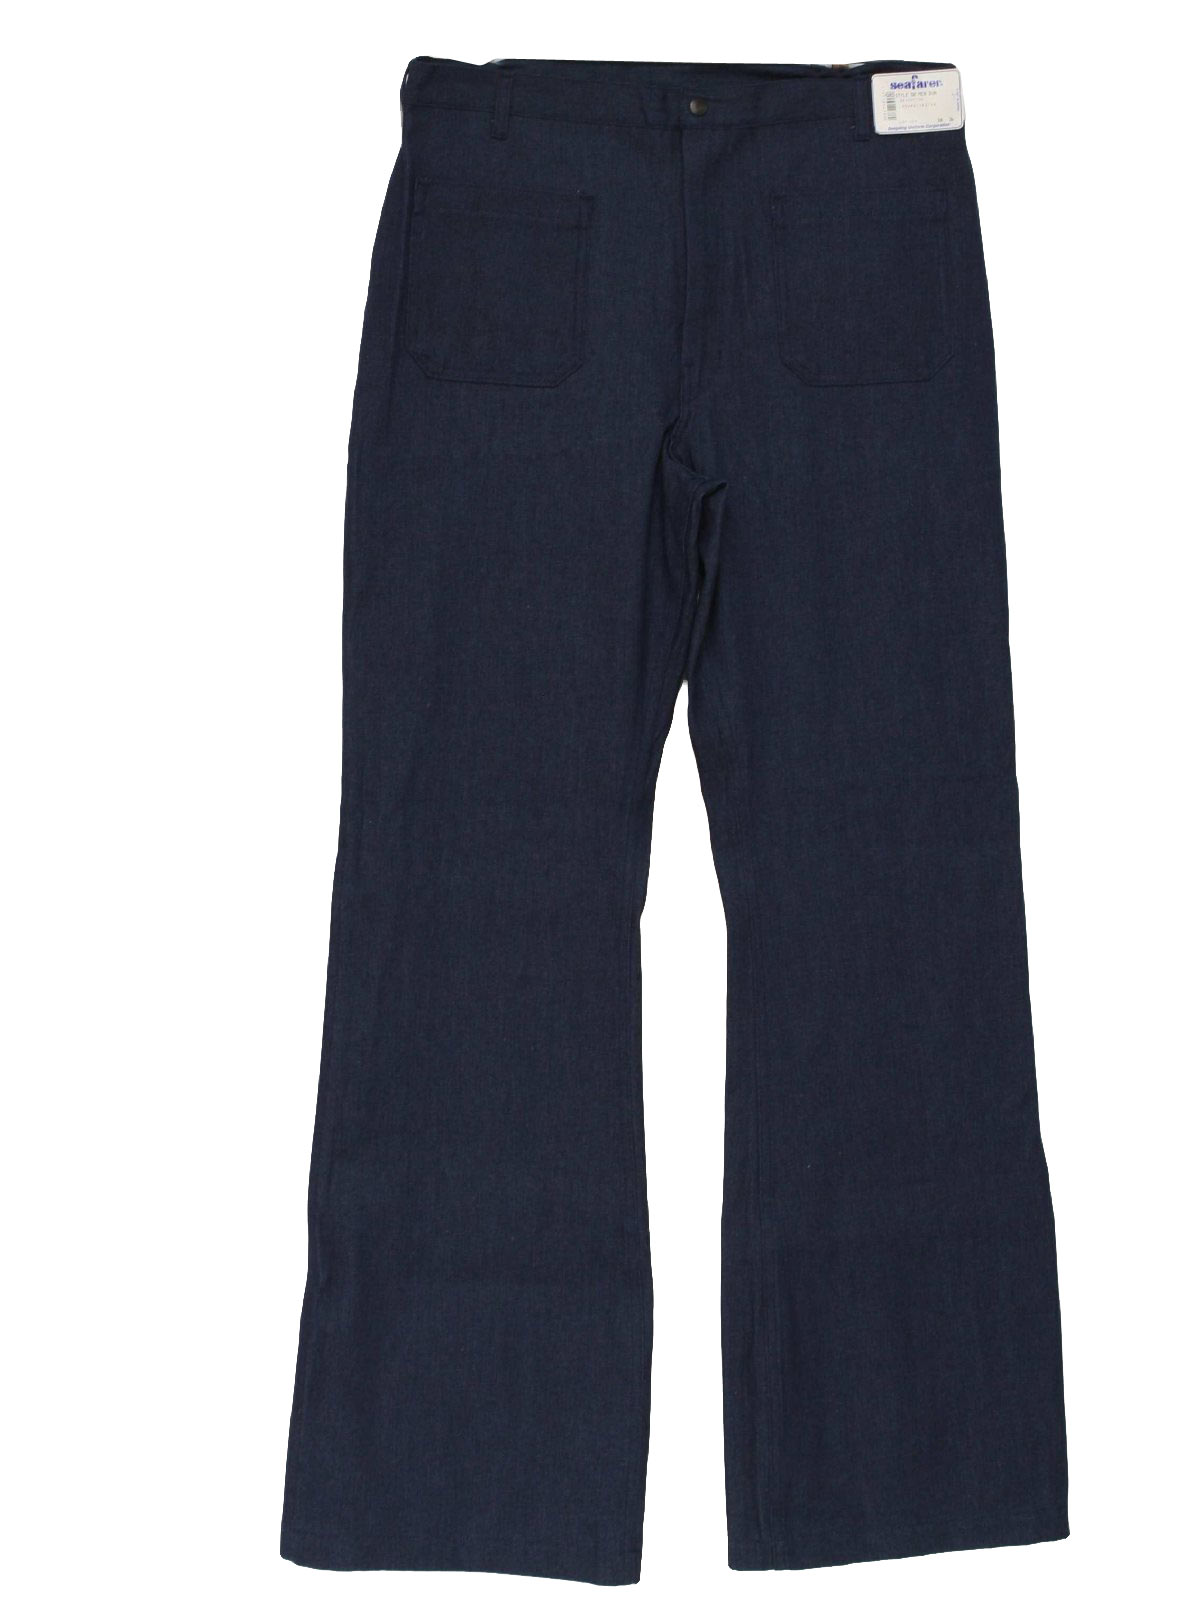 Vintage Seafarer 80's Bellbottom Pants: 80s -Seafarer- Mens dark blue ...